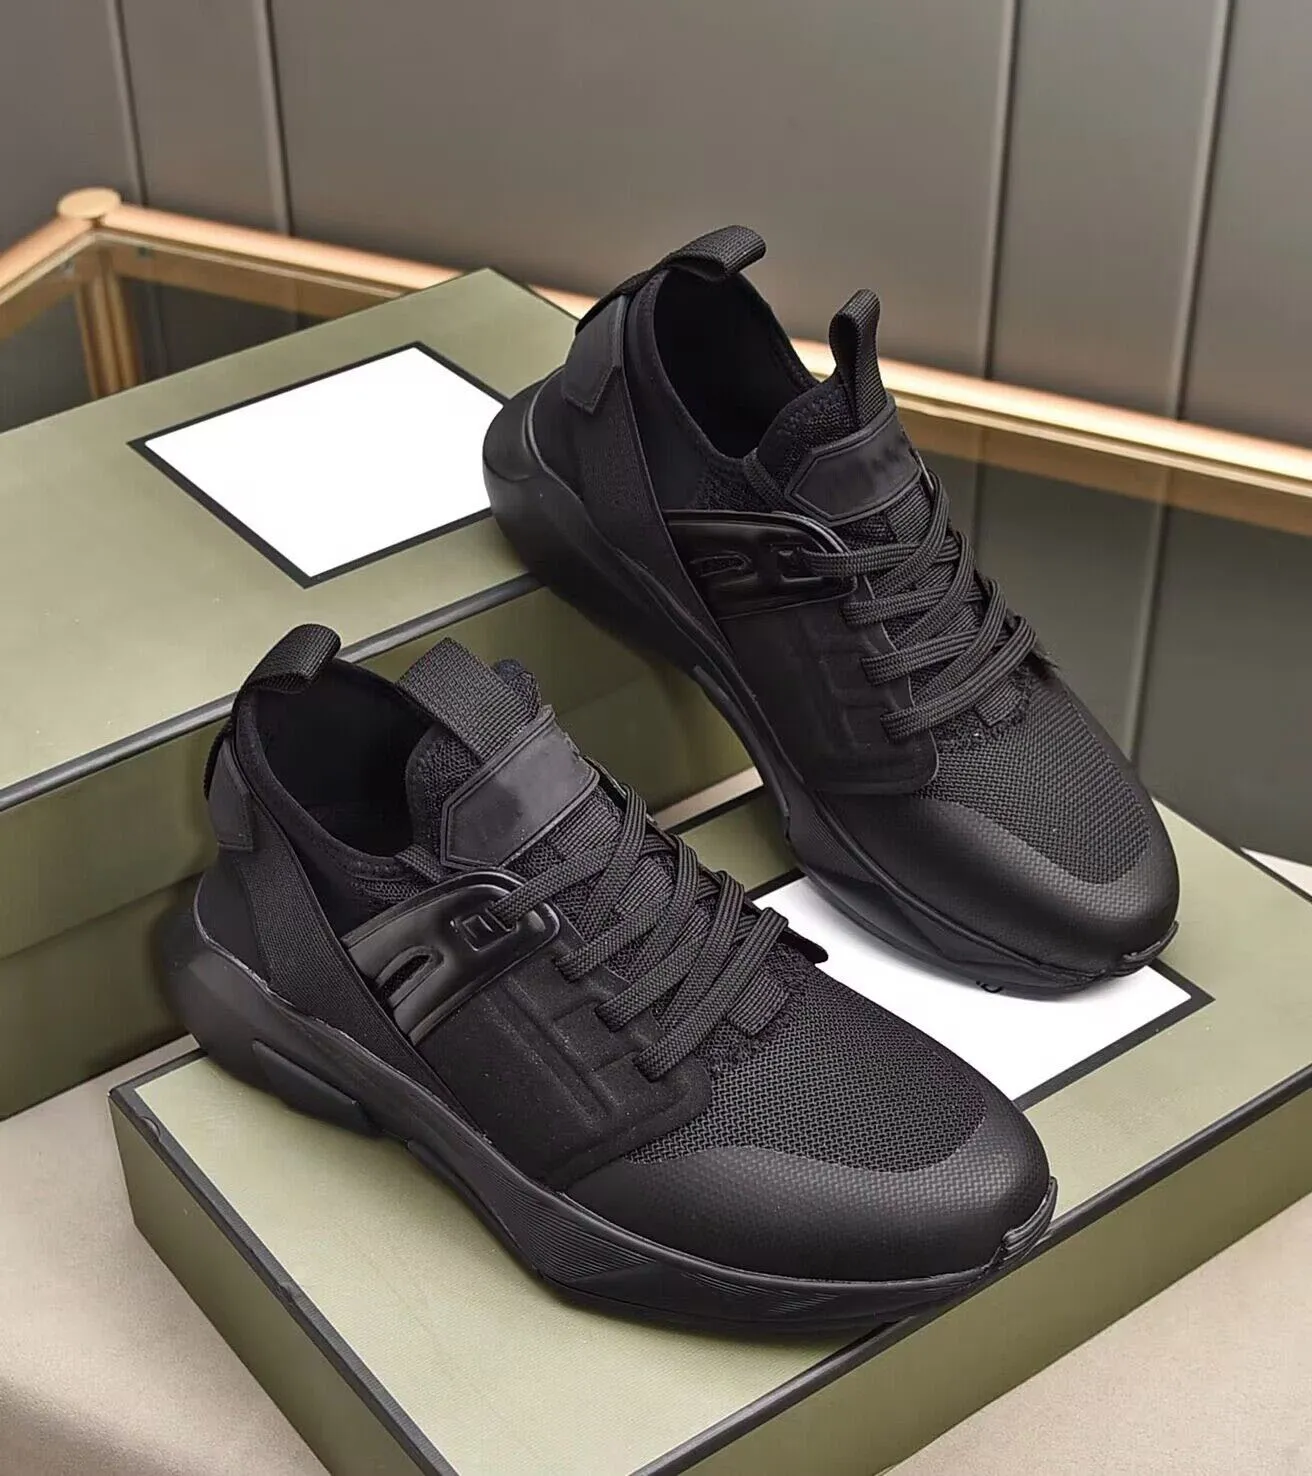 نايلون شبكة Jago أحذية رياضية خفيفة للغاية المطاط الوحيد المدربين أسود أبيض شبكة عادية المشي الراحة عداء الرياضة EU38-46.BOX